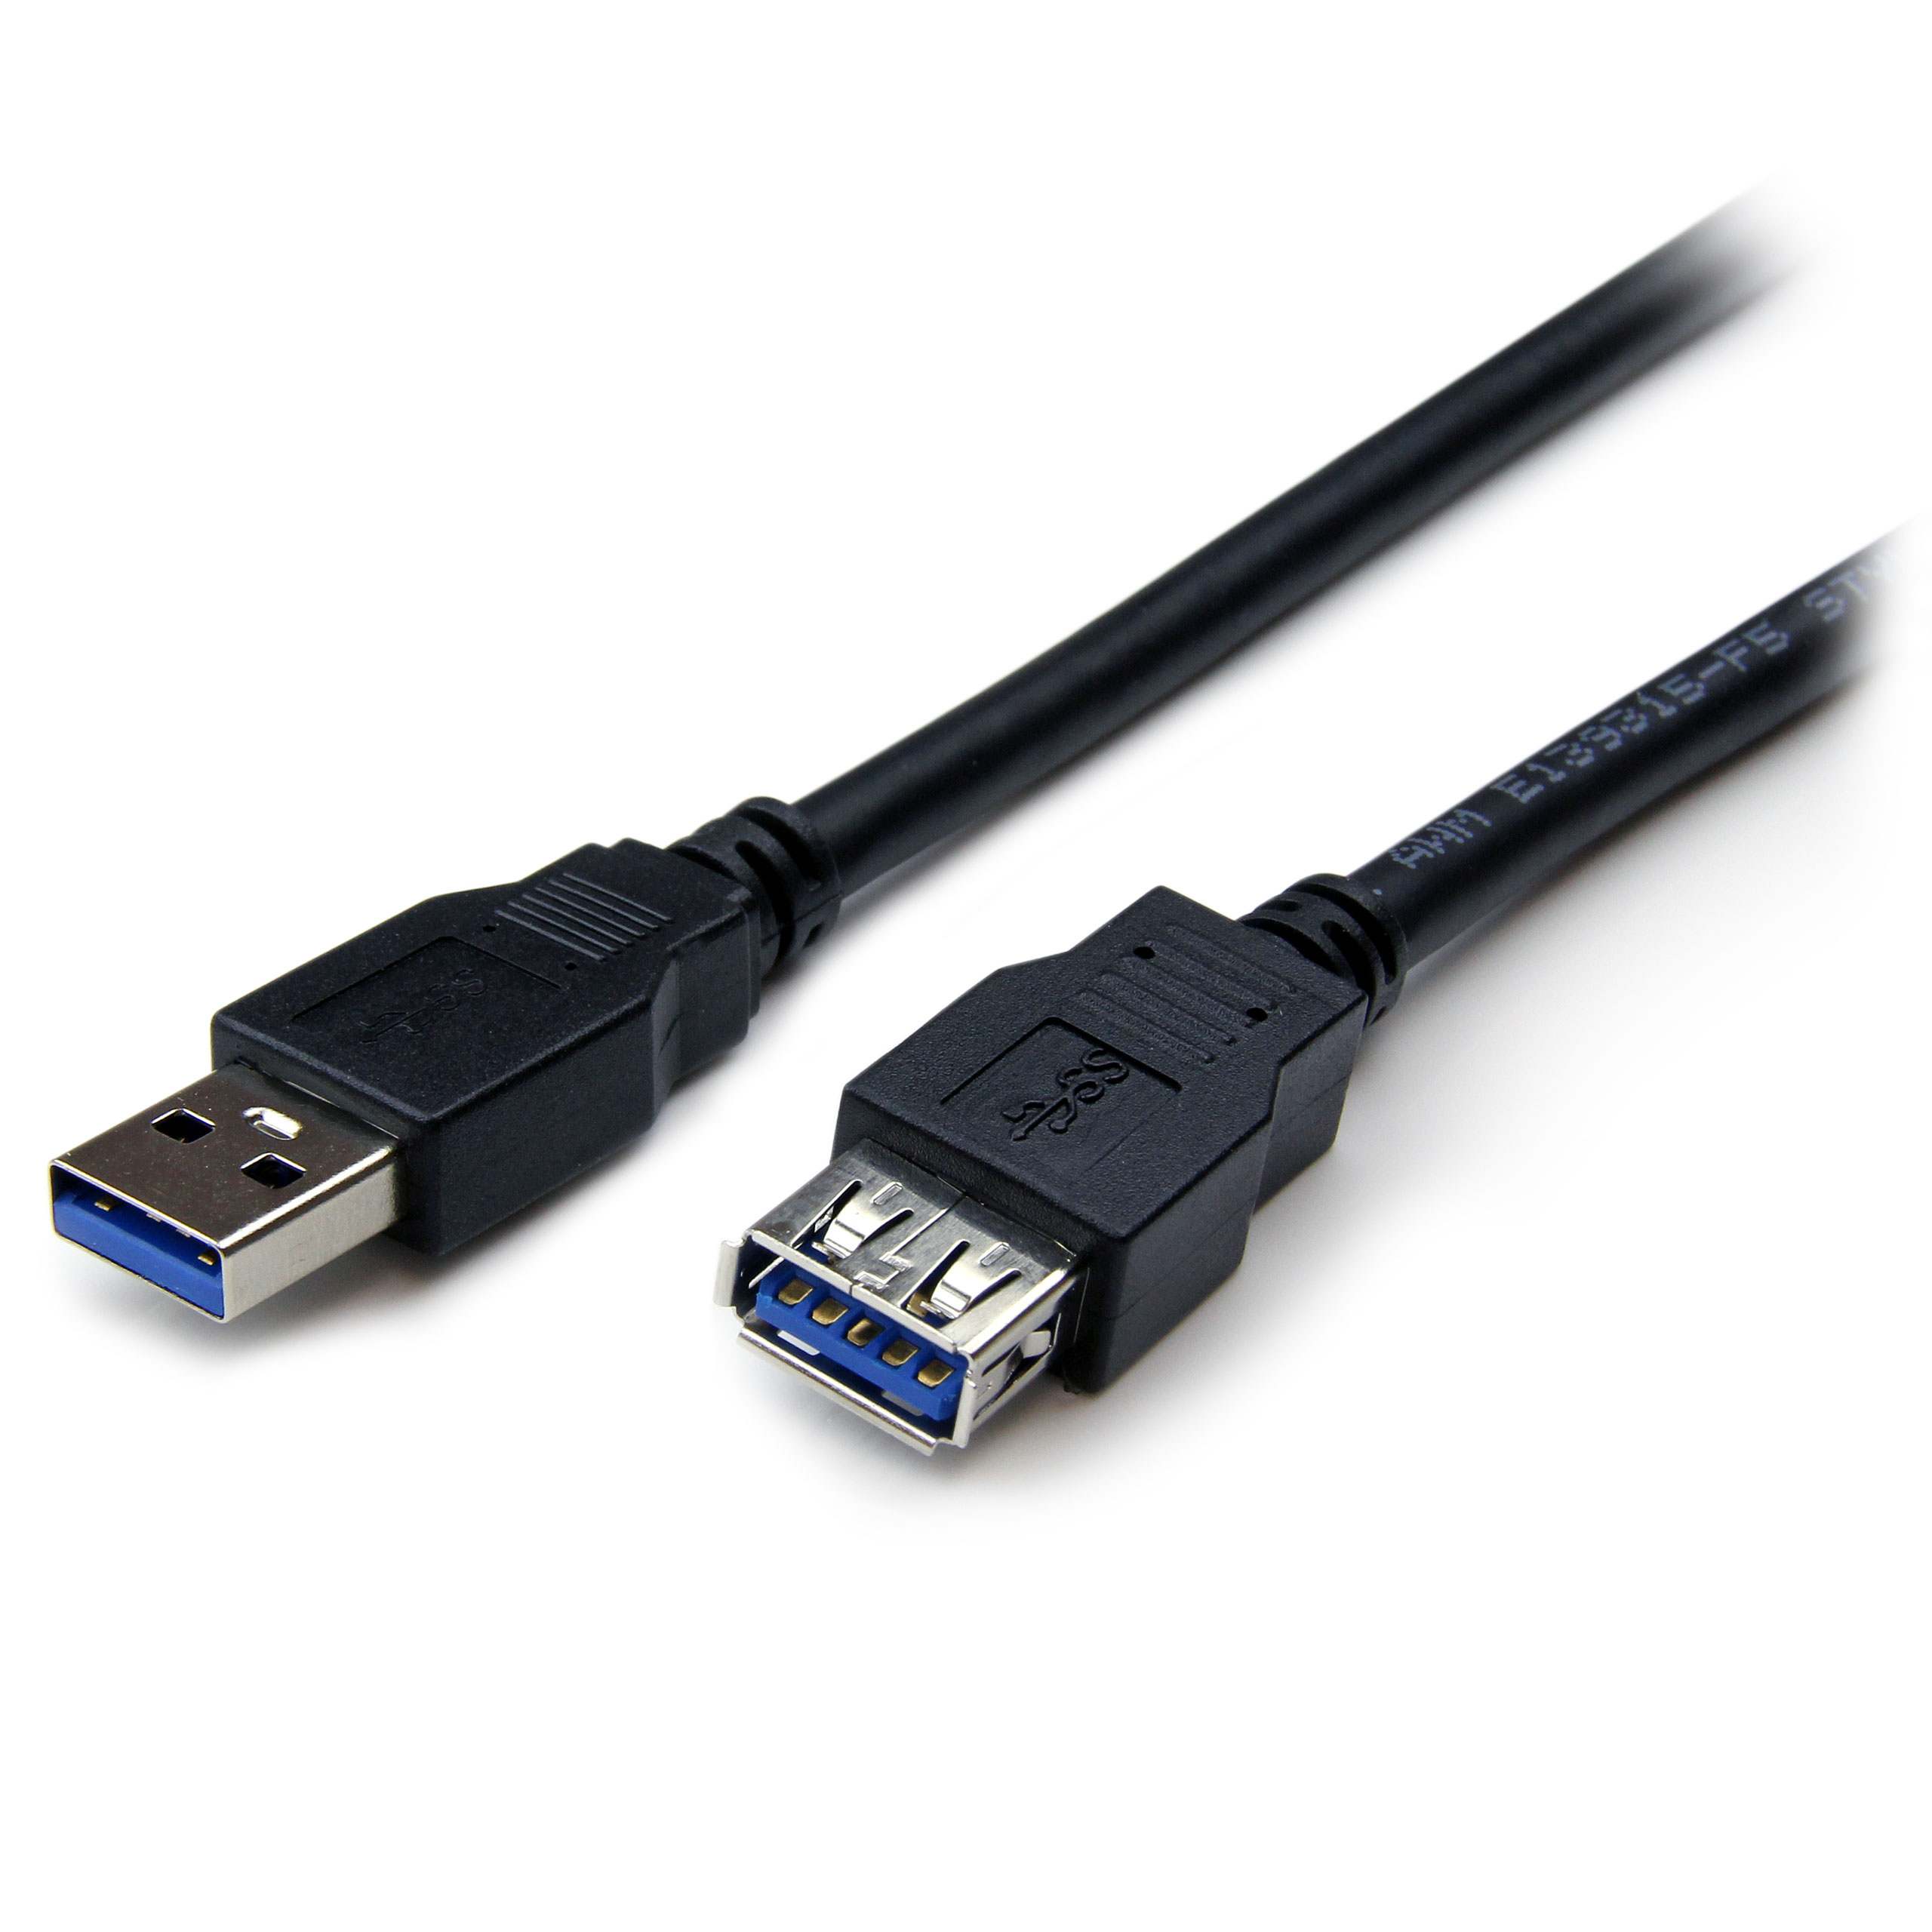 Удлиненный usb. Кабель USB 3.0 SUPERSPEED USB 3.0 19 Pin. Удлинитель юсб 3.0. Cable USB to USB 2.0 1.5M удлинитель. Perfeo мультимедийный кабель USB 2.0 A - USB 2.0 А, 1,8 М.